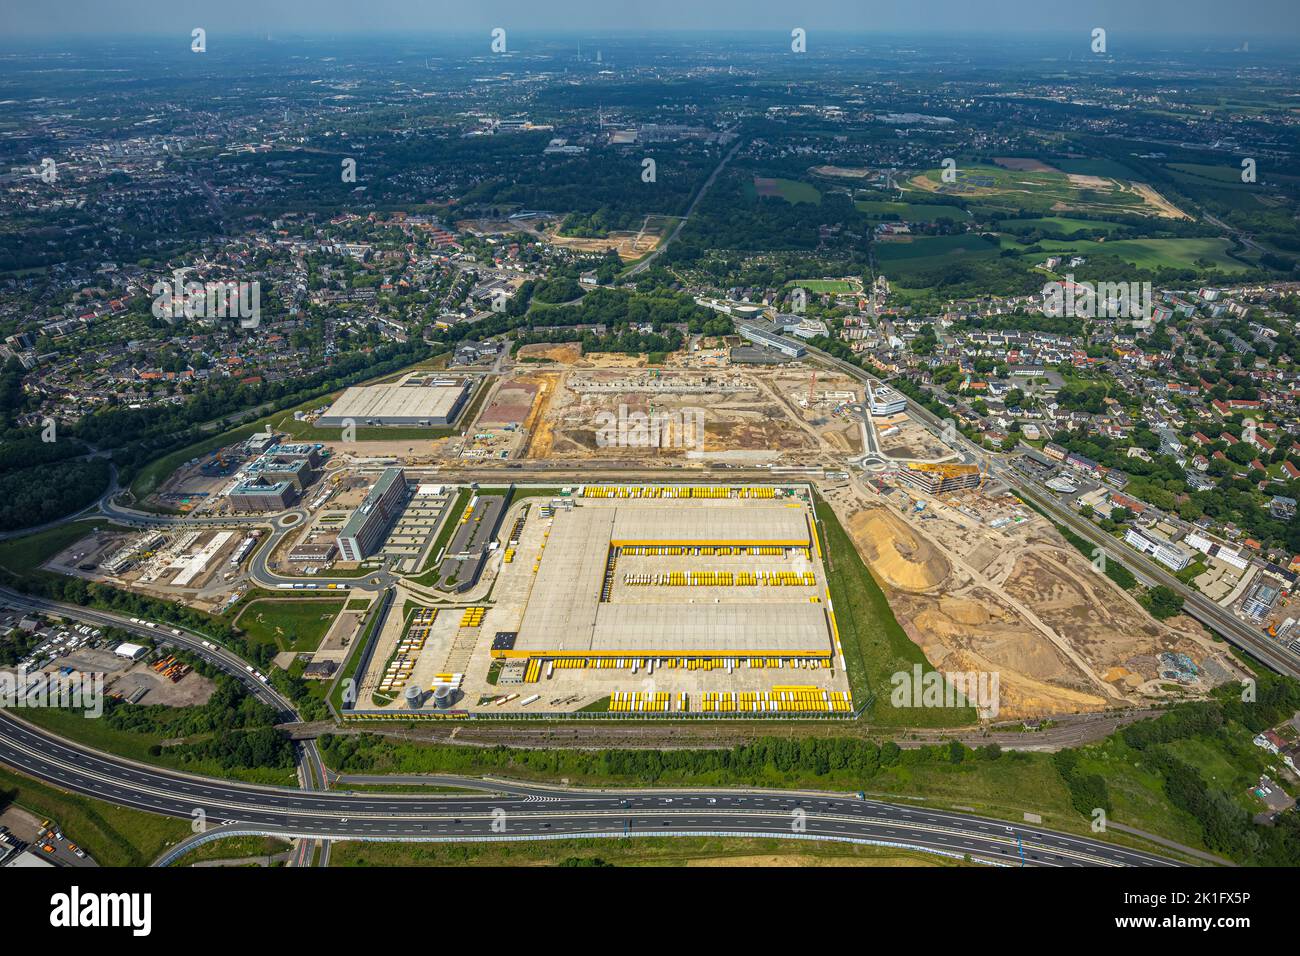 Vue aérienne, chantier Mark 51/7, centre logistique DHL, Laer, Bochum, région de Ruhr, Rhénanie-du-Nord-Westphalie, Allemagne, travaux de construction, Bâtiment Banque D'Images